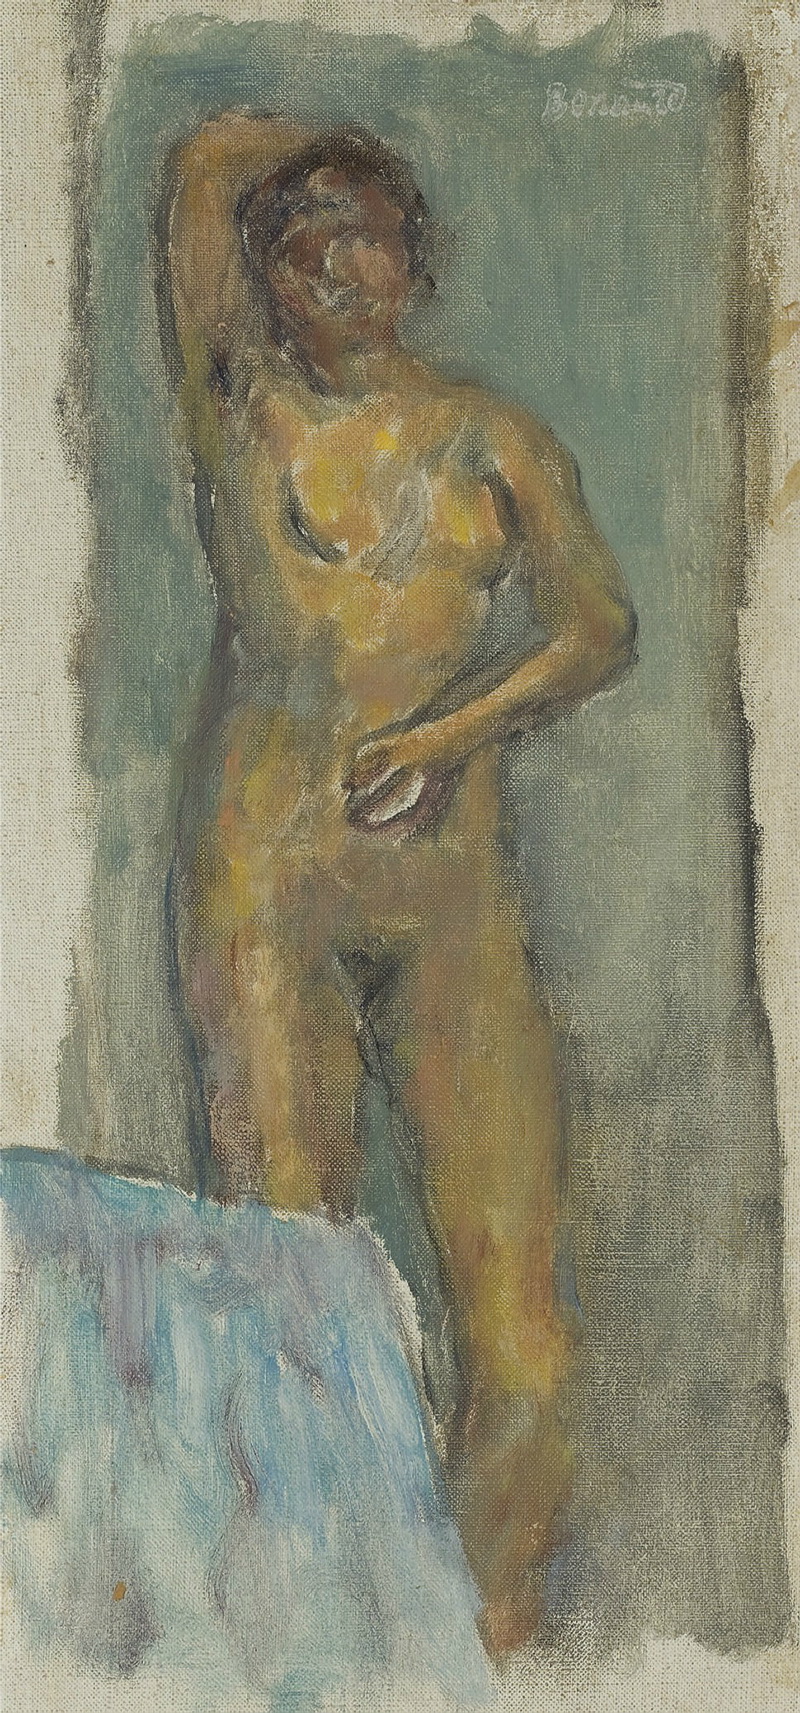 A026038《裸体直立》法国画家皮埃尔·博纳尔高清作品 油画-第1张